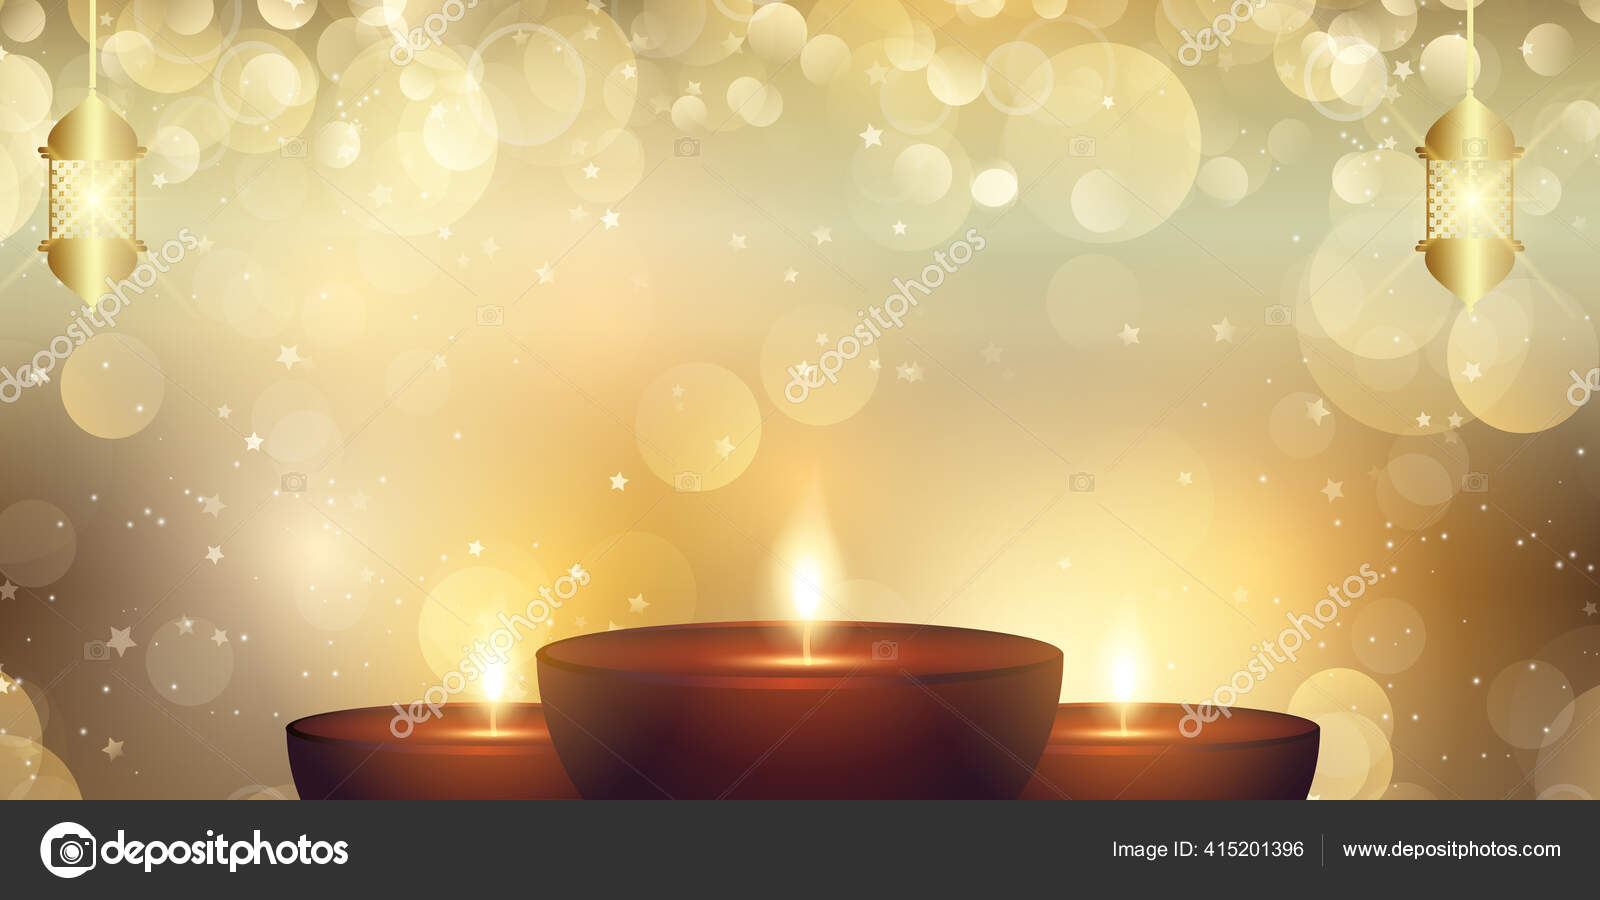 Đèn trang trí Lễ Diwali làm say đắm trái tim mọi người bởi vẻ đẹp lộng lẫy và phù hợp với tâm trạng của ngày hội. Nếu bạn là người yêu thích truyền thống Ấn Độ, hãy đừng bỏ lỡ hình ảnh đầy mê hoặc về những đèn trang trí lung linh này.